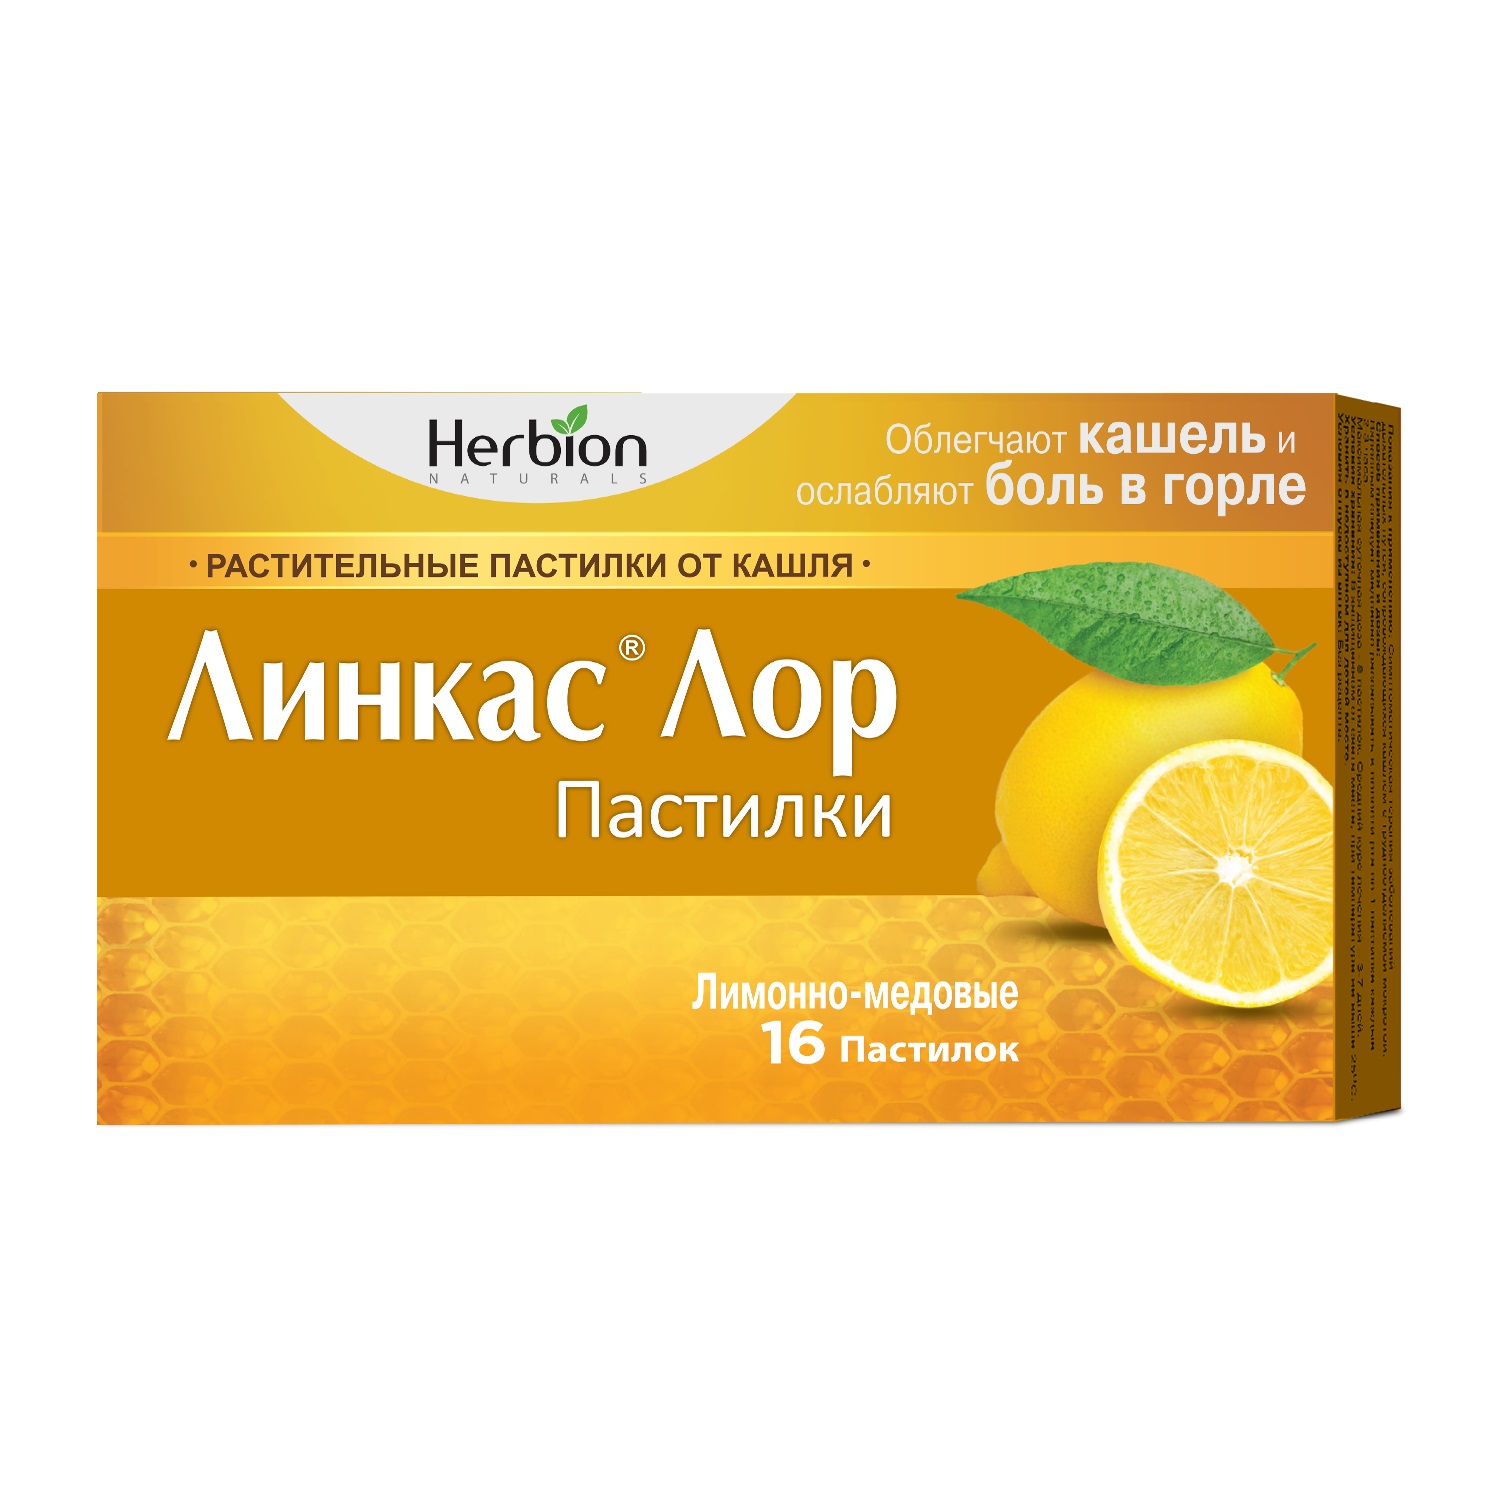 Купить Линкас Лор мед лимон паст. №16, Herbion Pak.